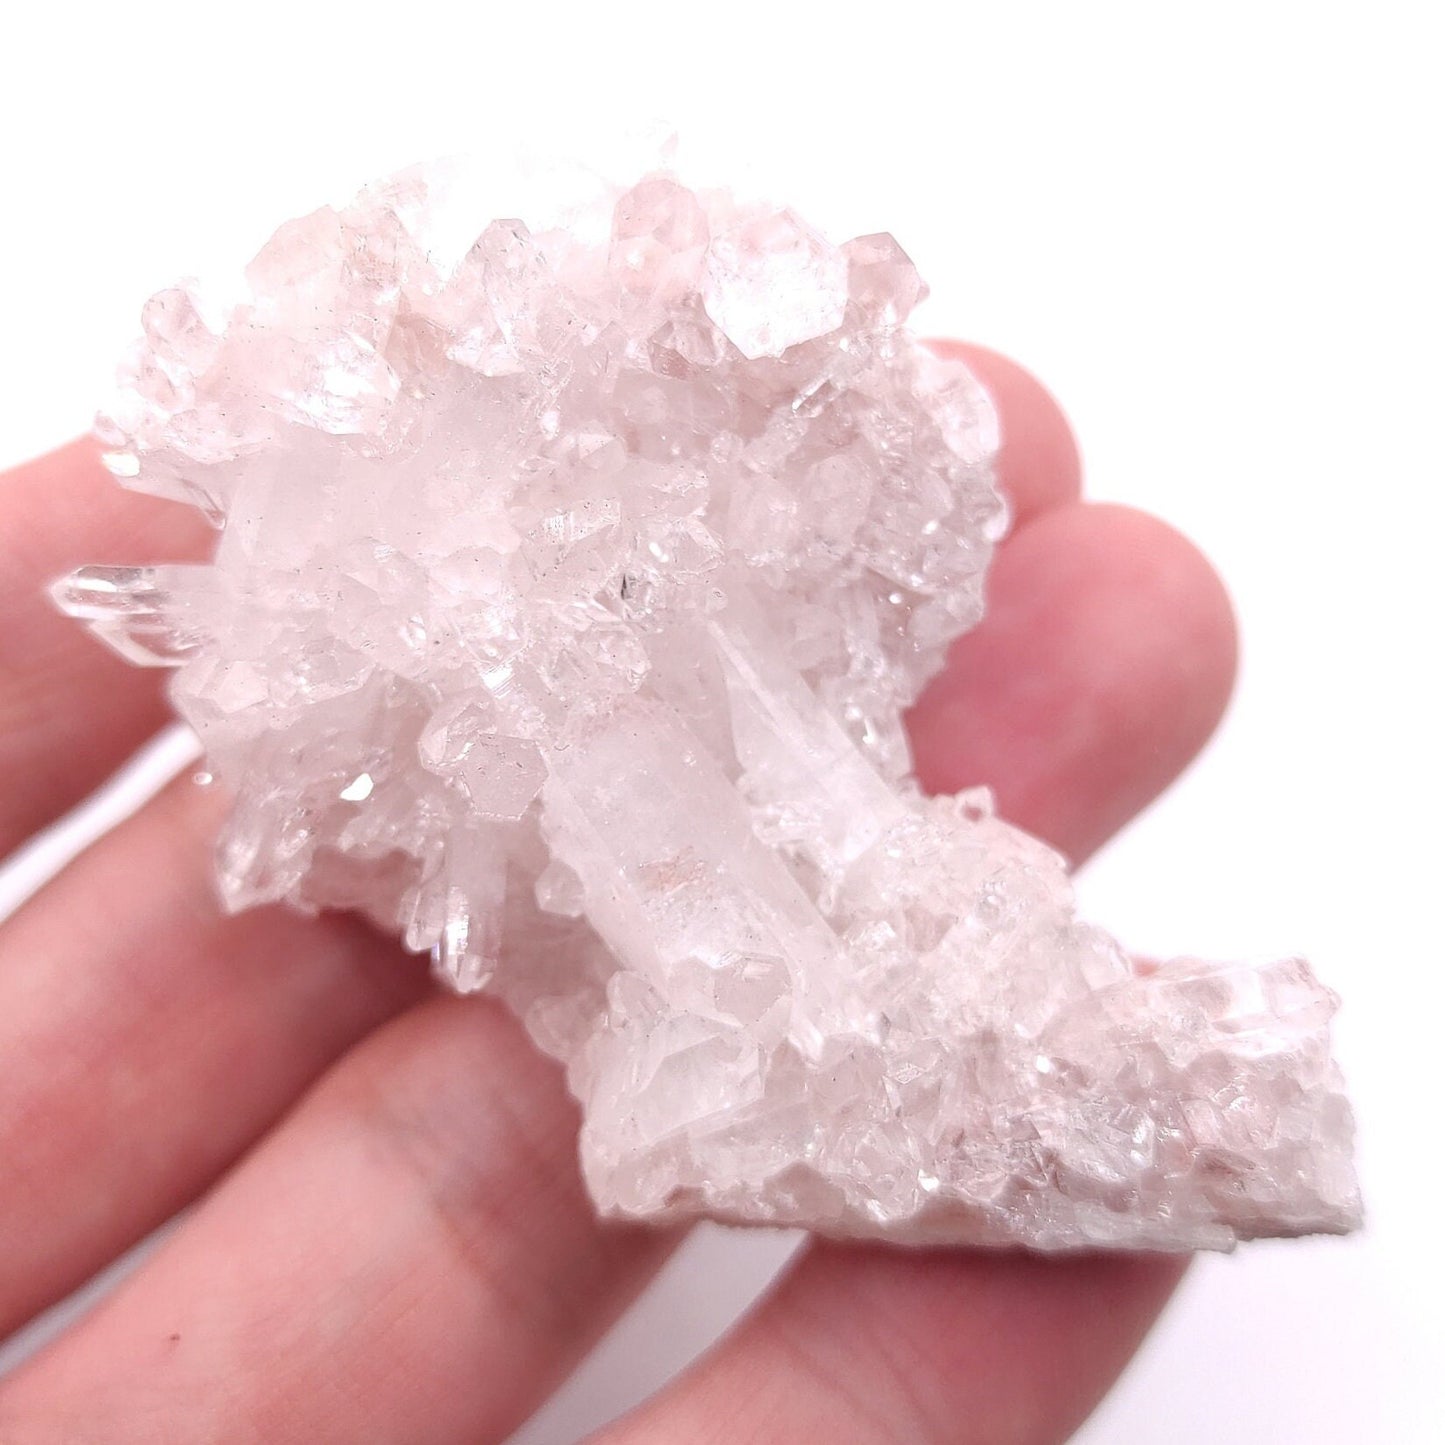 43g Natural Pink Lithium Coated Quartz Crystal - Bolivar, Santander, Colombia - Pink Quartz Cluster - Crystallized Quartz Mineral Specimen